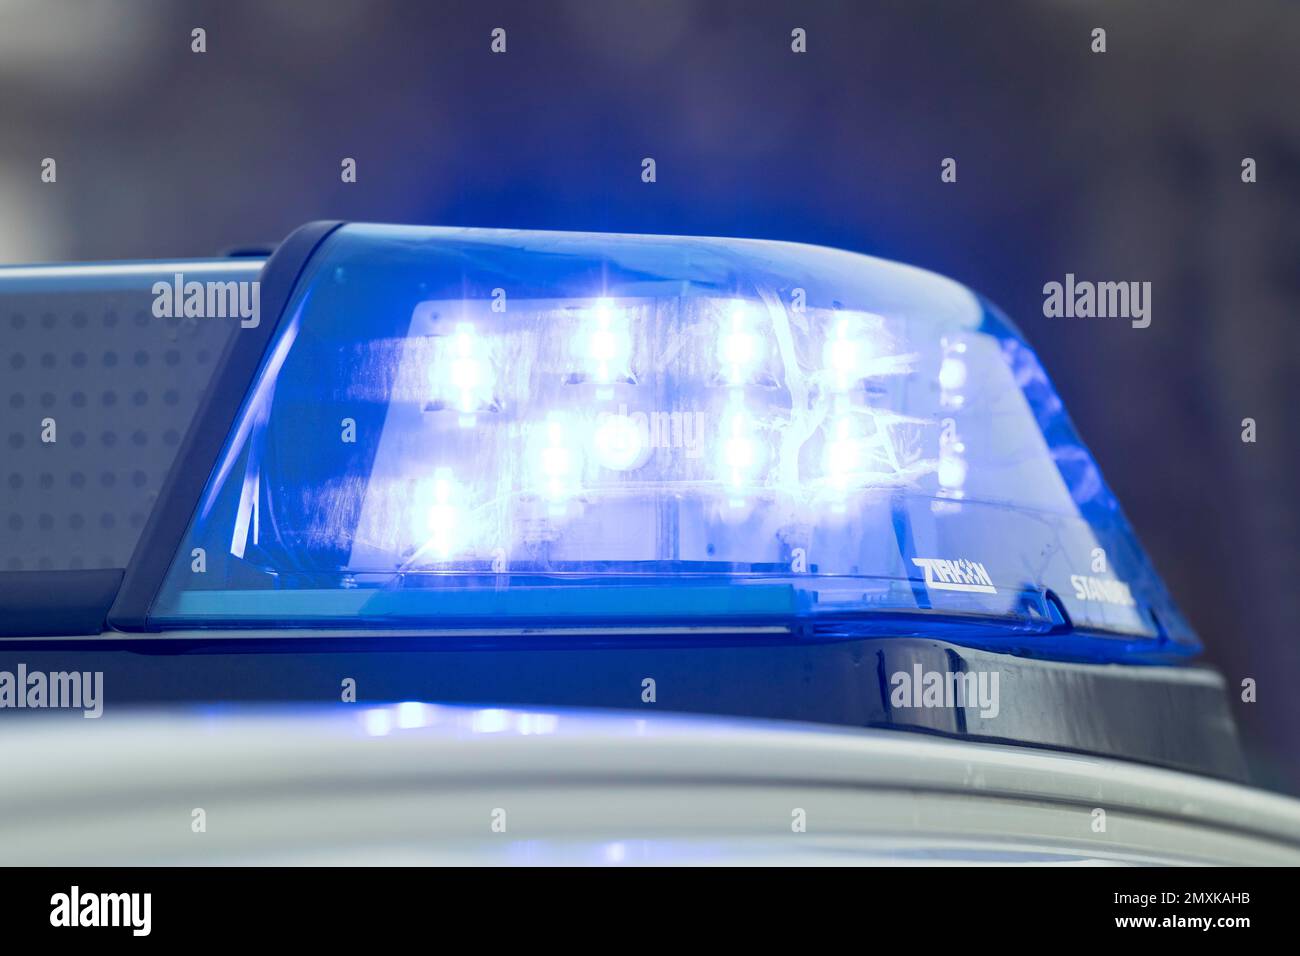 Polizeiwagen, Blaulicht, LED-Beleuchtung, Baden-Württemberg, Deutschland,  Europa Stockfotografie - Alamy